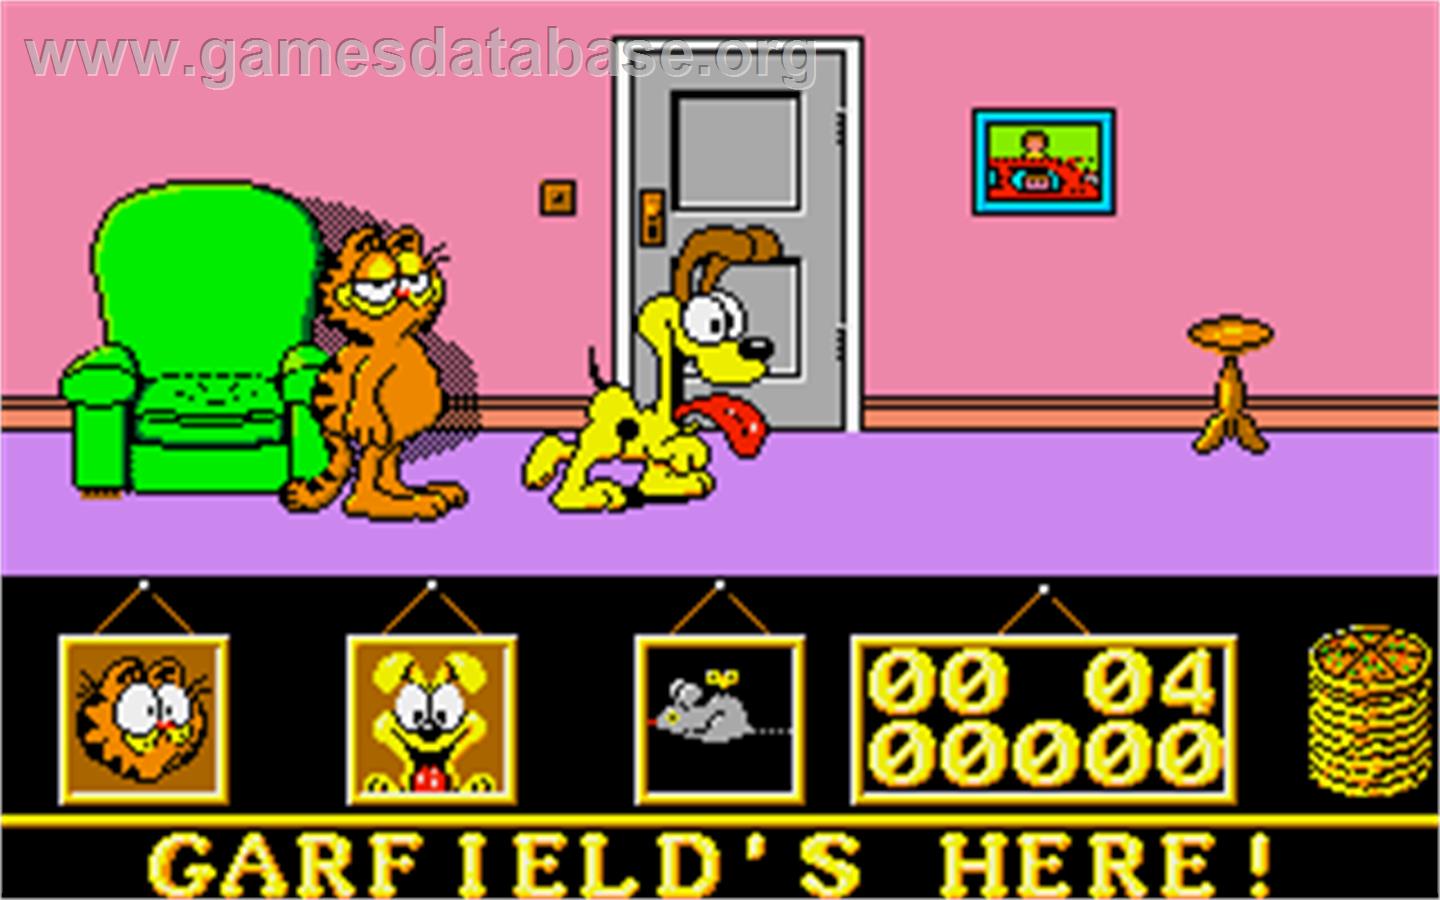 Garfield: Big, Fat, Hairy Deal - Atari ST - Artwork - In Game